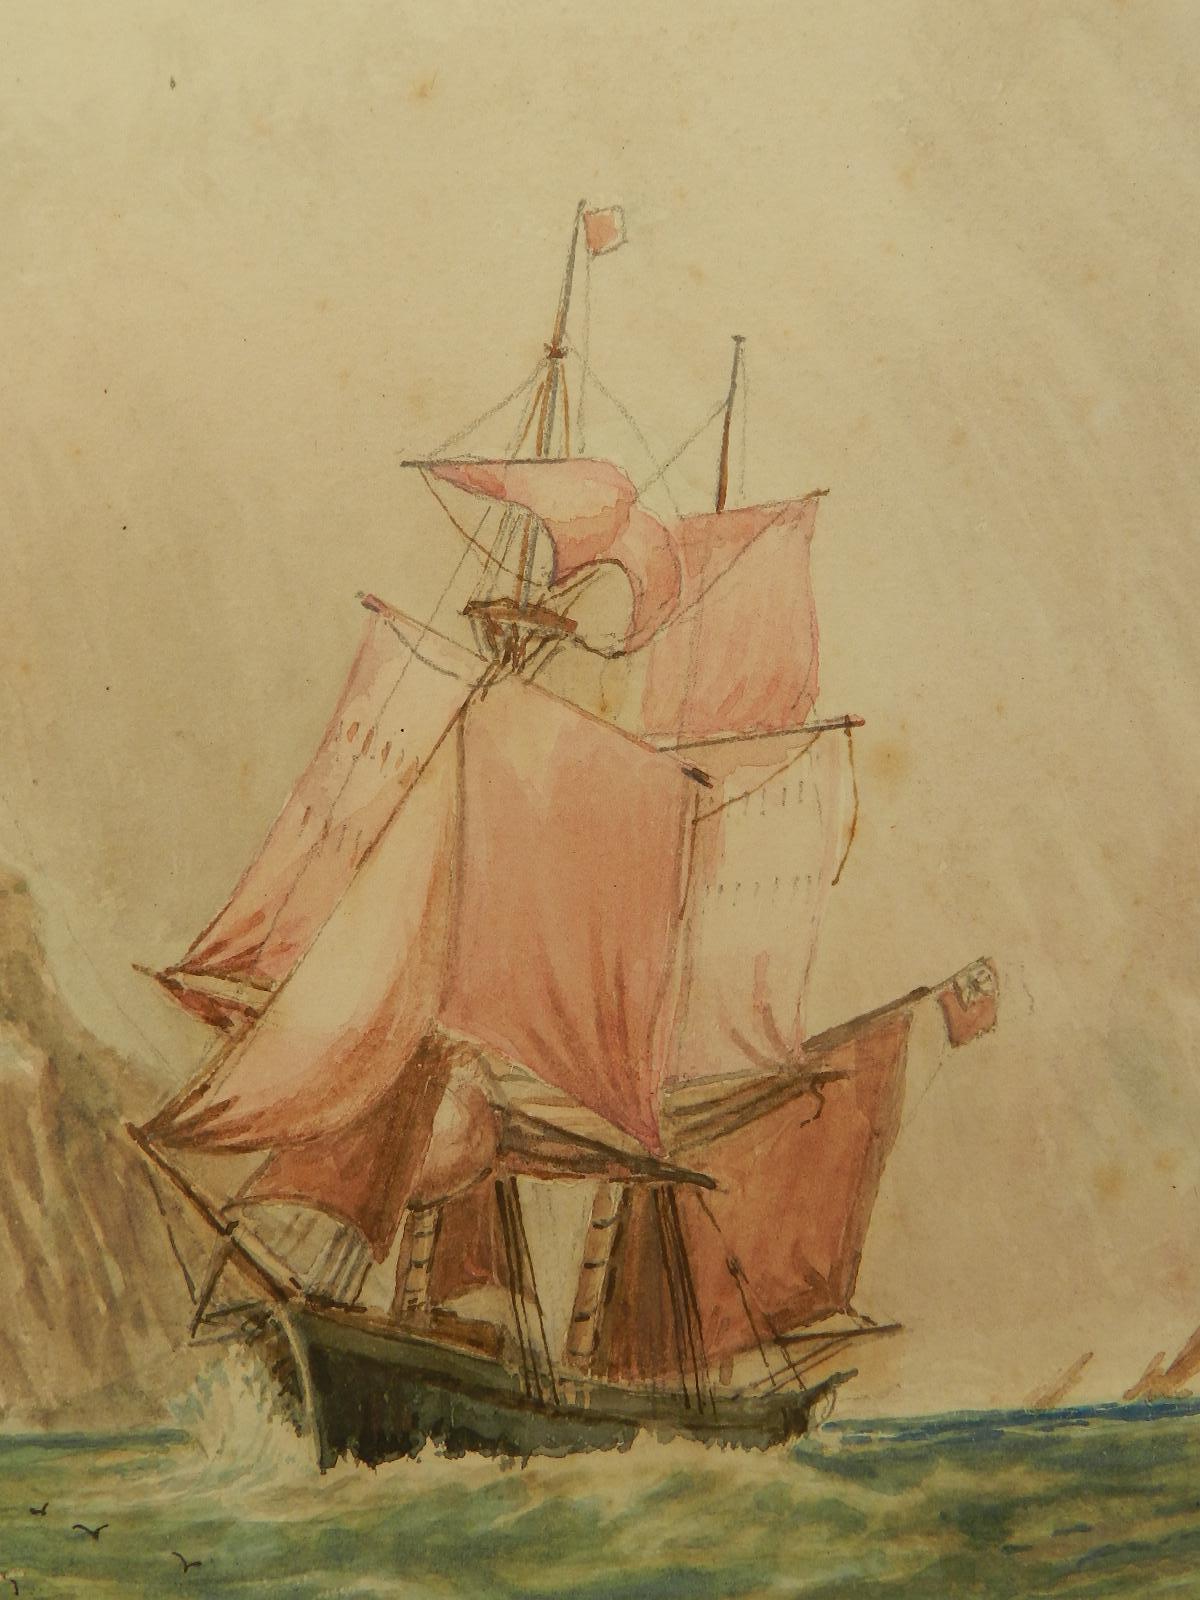 Watercolor Sketch Sailing Ship at Sea English Marine by John Moore late 19th Cen 1